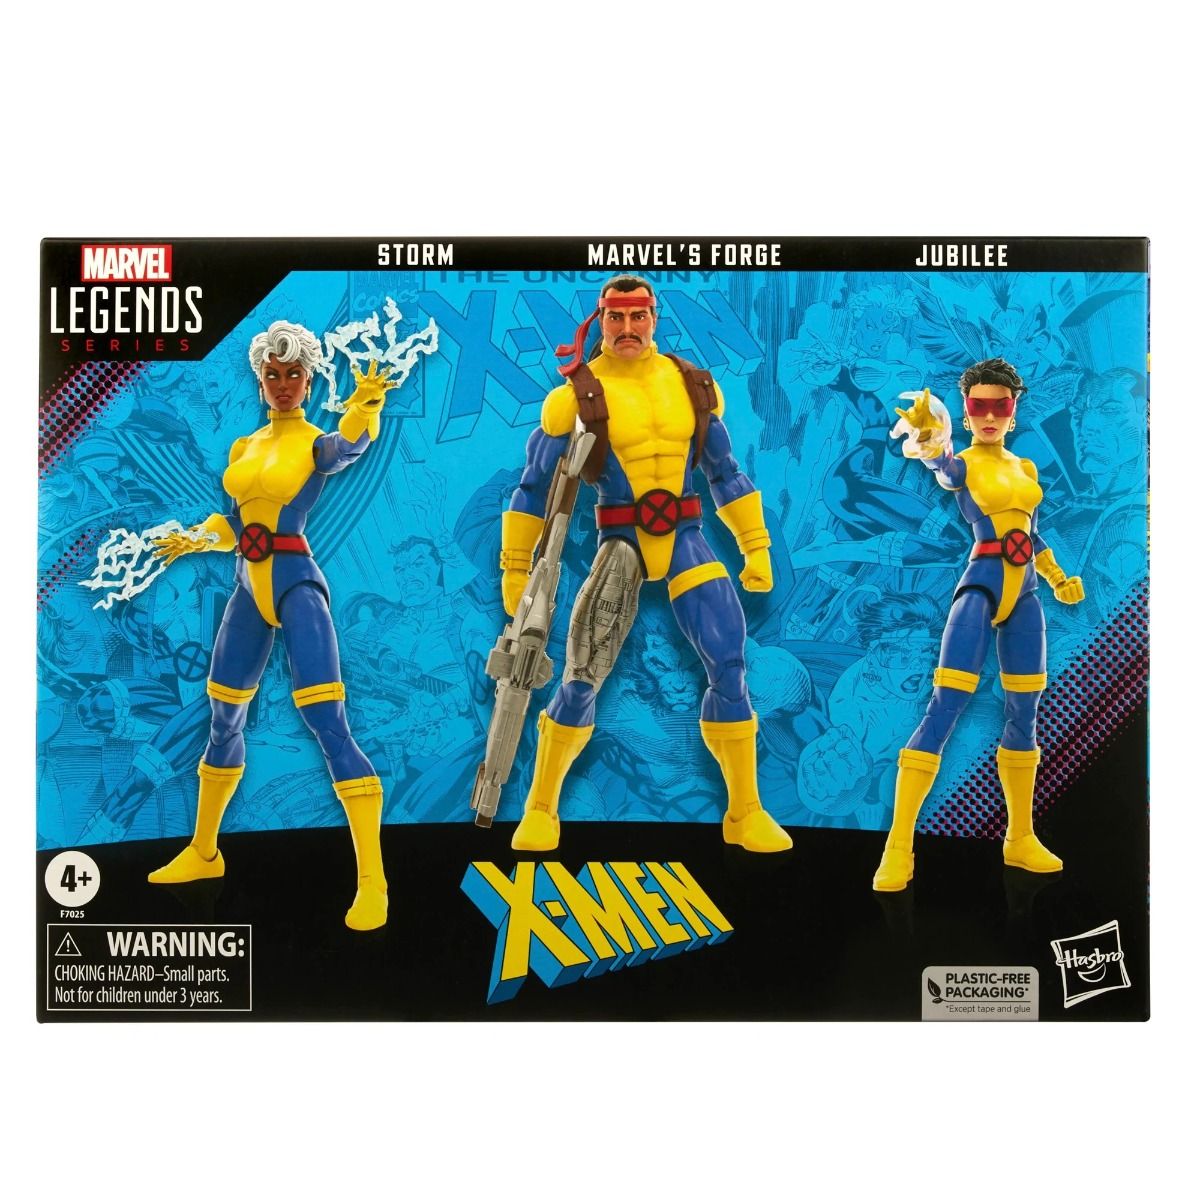 Marvel Legends X-Men Storm Marvel's Forge Jubilee 6-Inch Action Figure 3-Pack画像